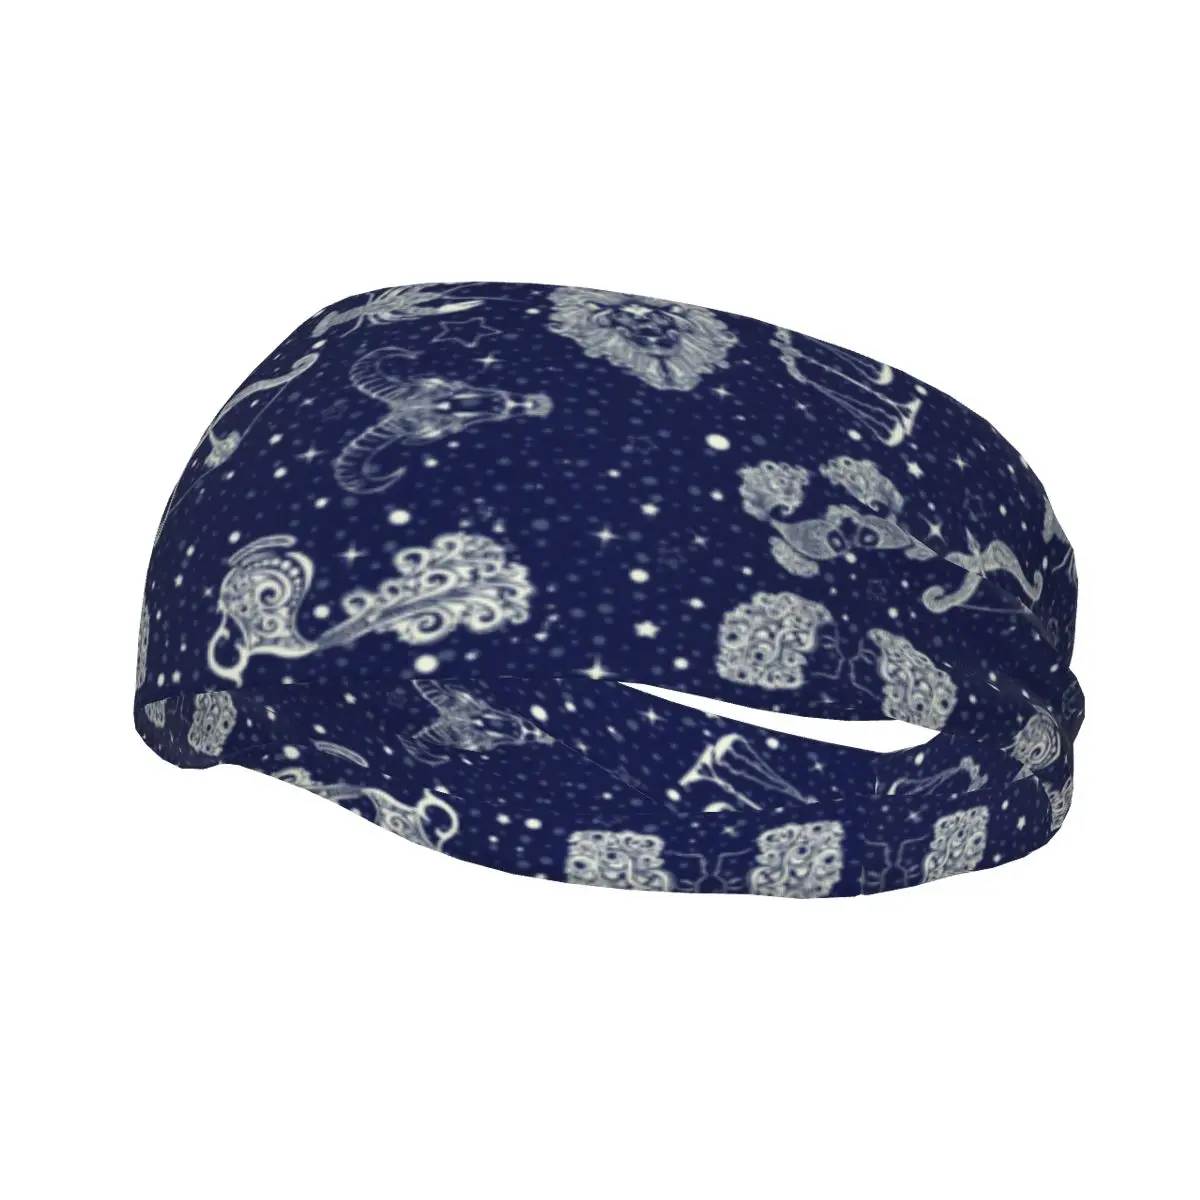 Повязка на голову Space Galaxy Constellation, Повязка для волос, повязка для тенниса, тренажерного зала, Головные уборы для фитнеса, Аксессуары для волос